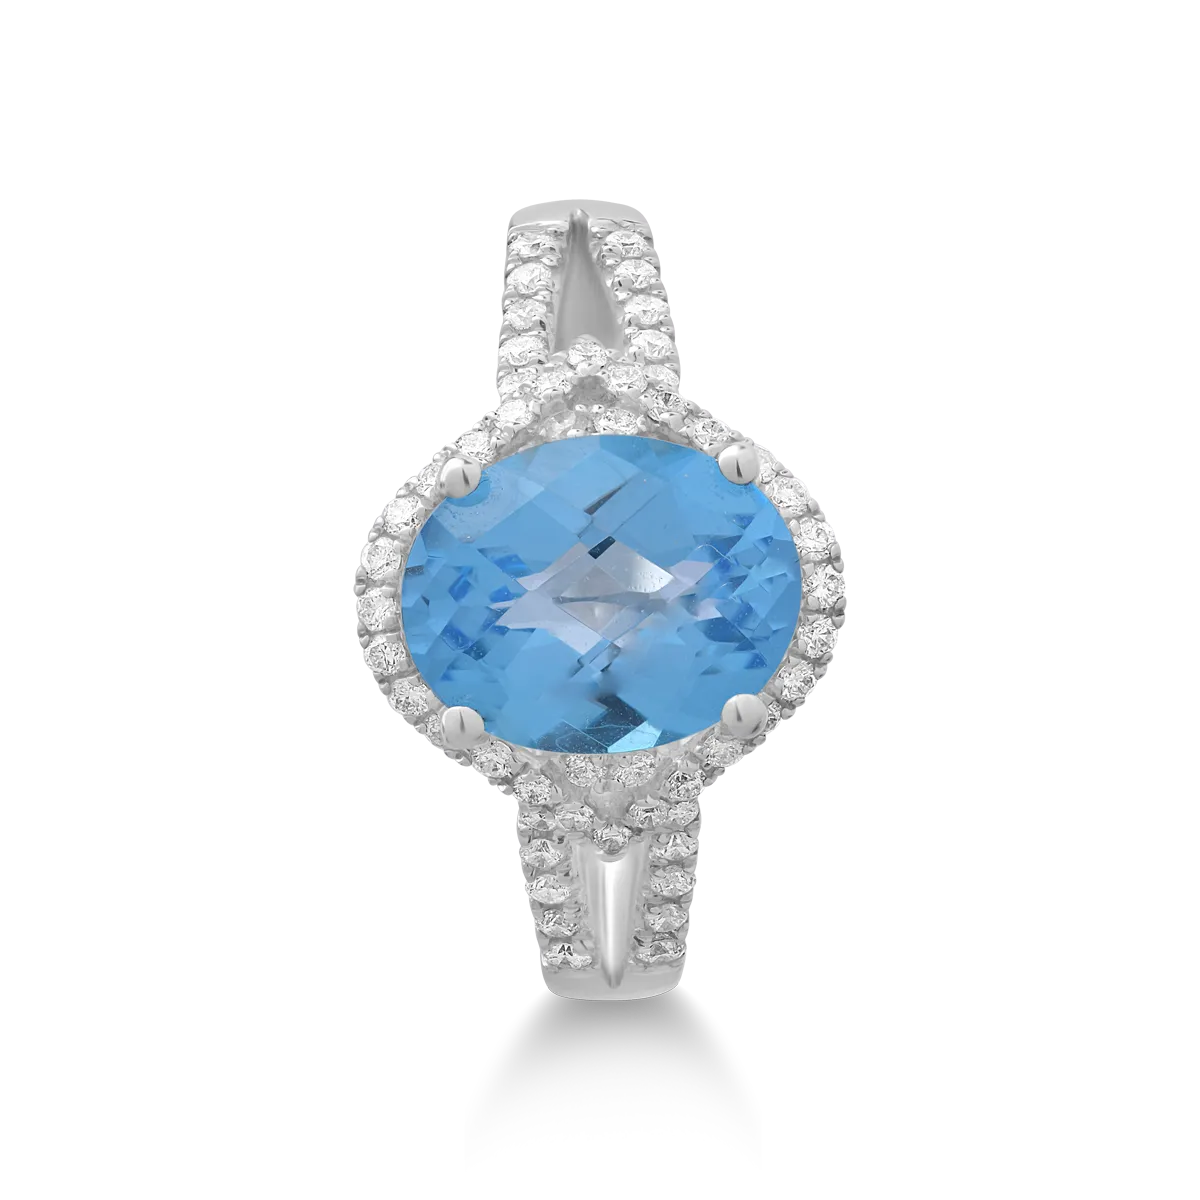 18K fehérarany gyűrű 3ct kék topázzal és 0.38ct gyémántokkal